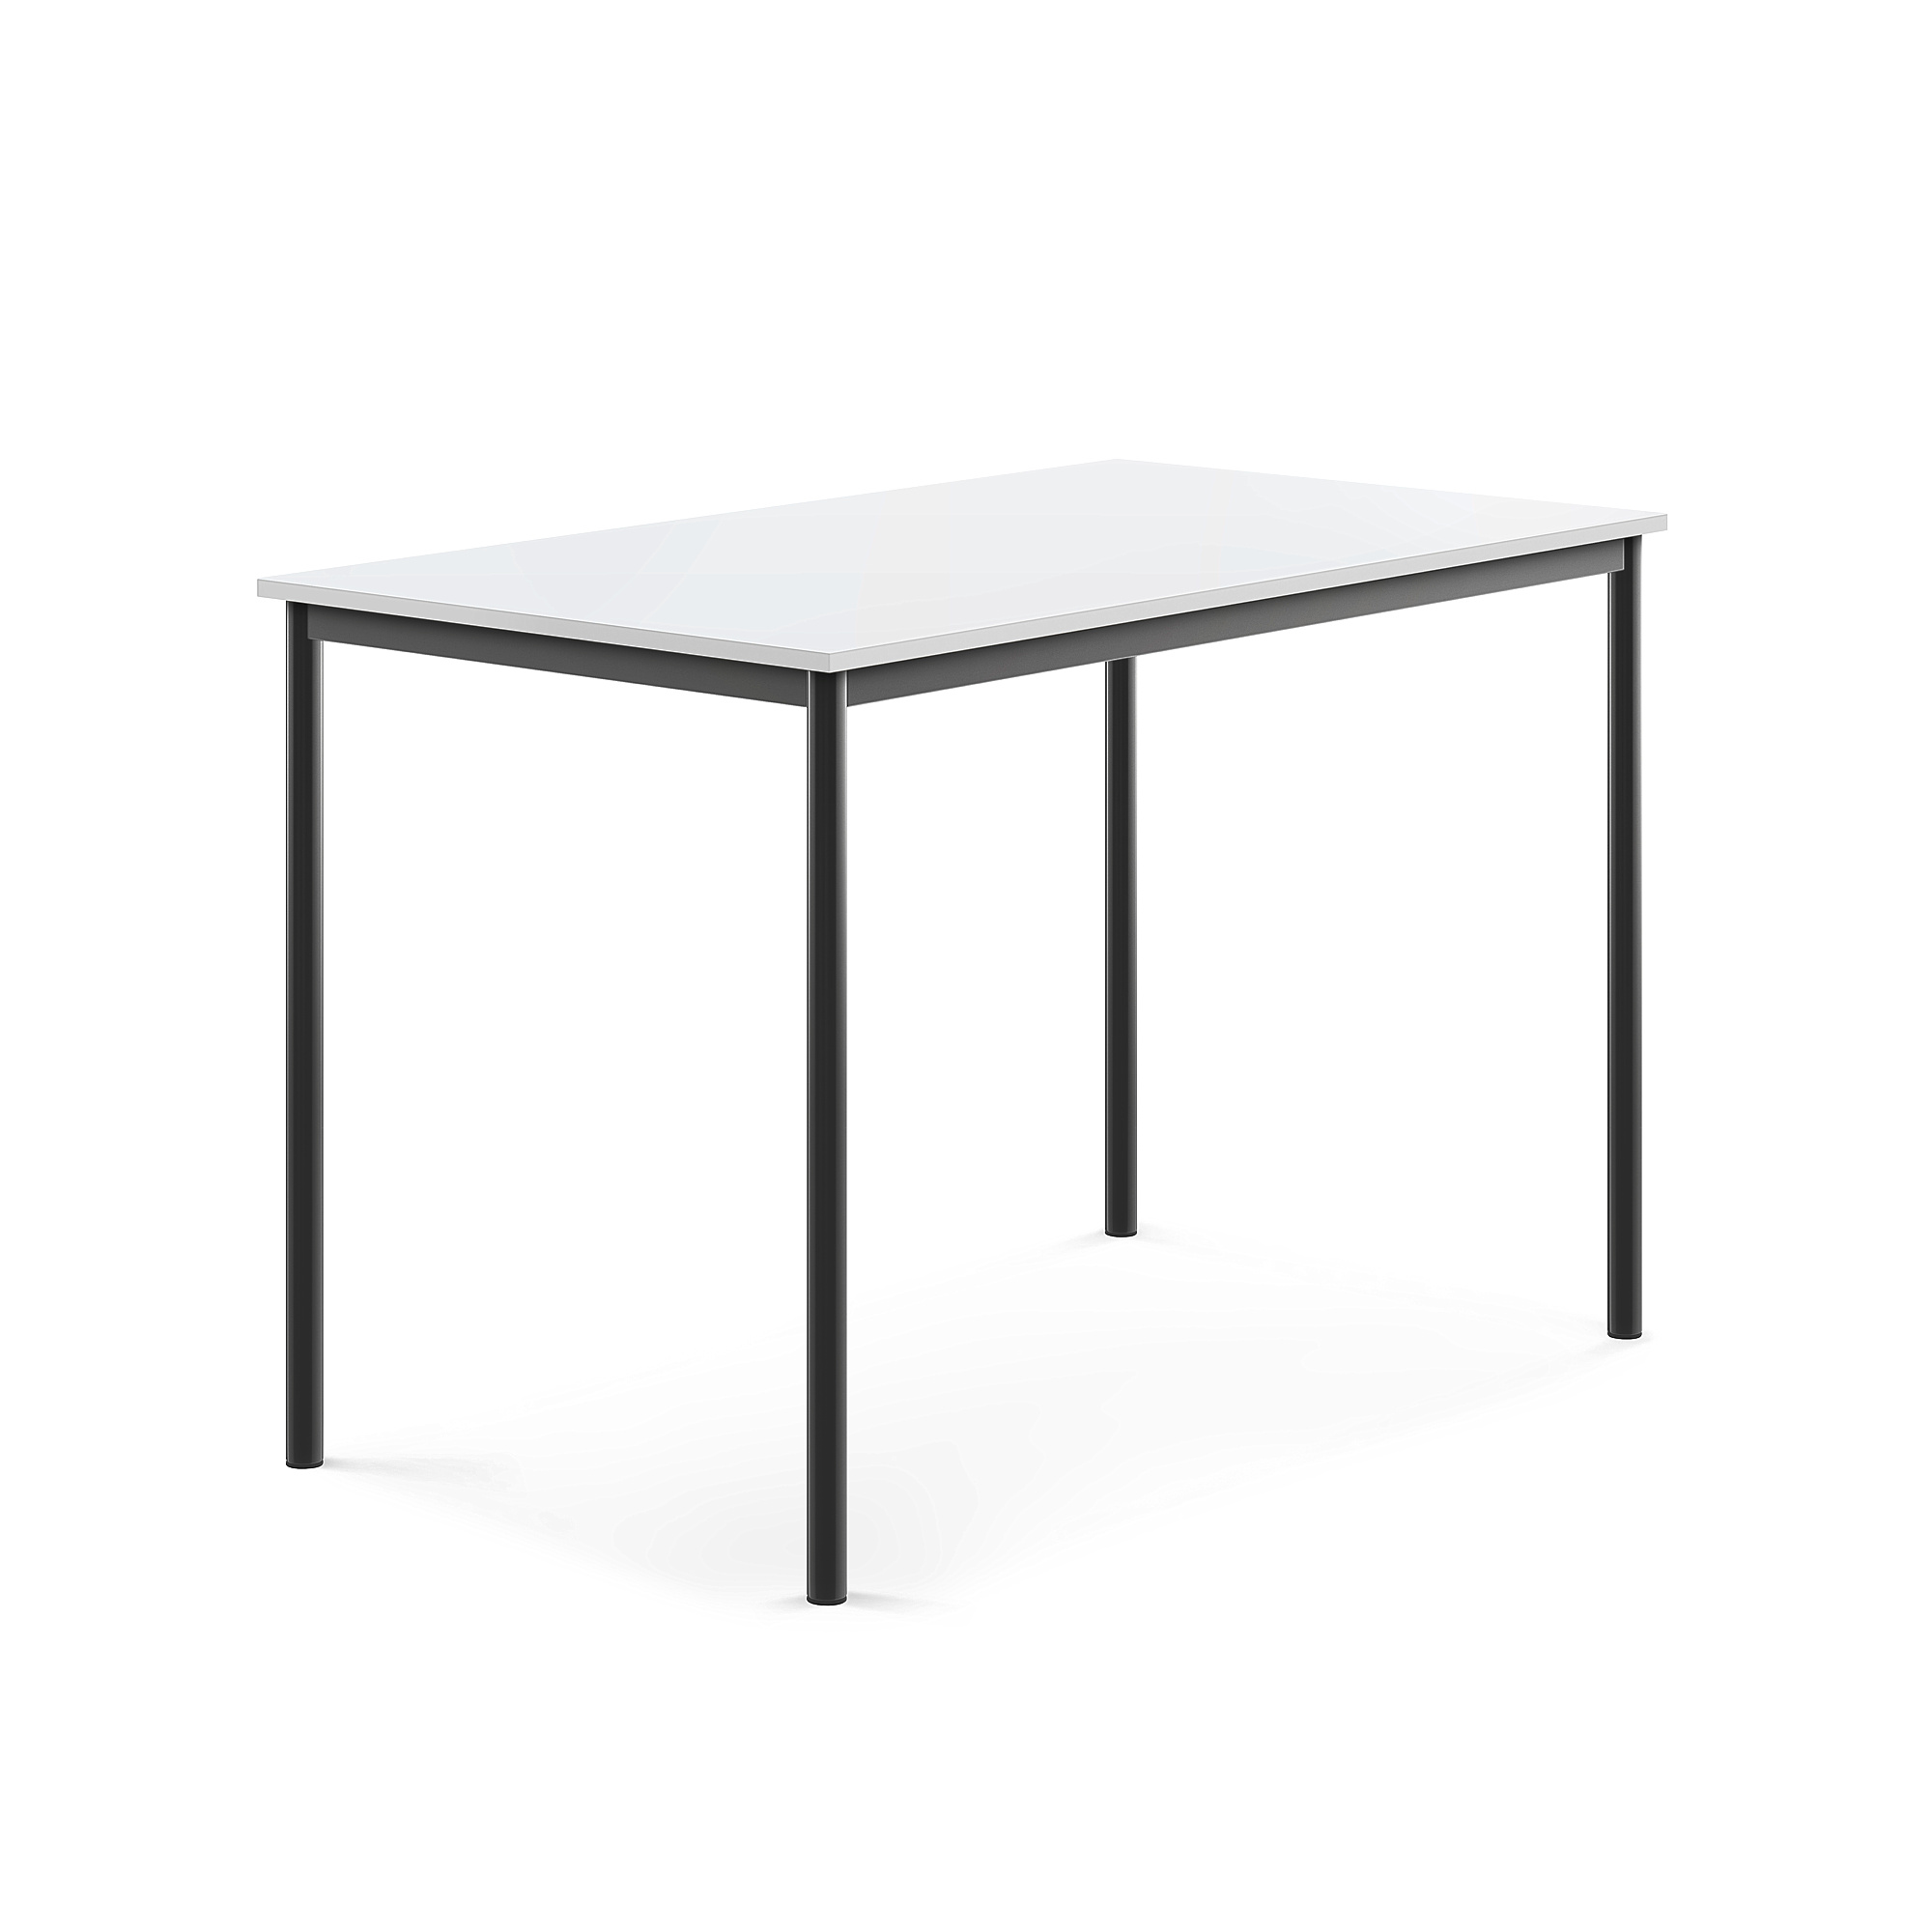 Stůl SONITUS, 1400x800x900 mm, antracitově šedé nohy, HPL deska tlumící hluk, bílá